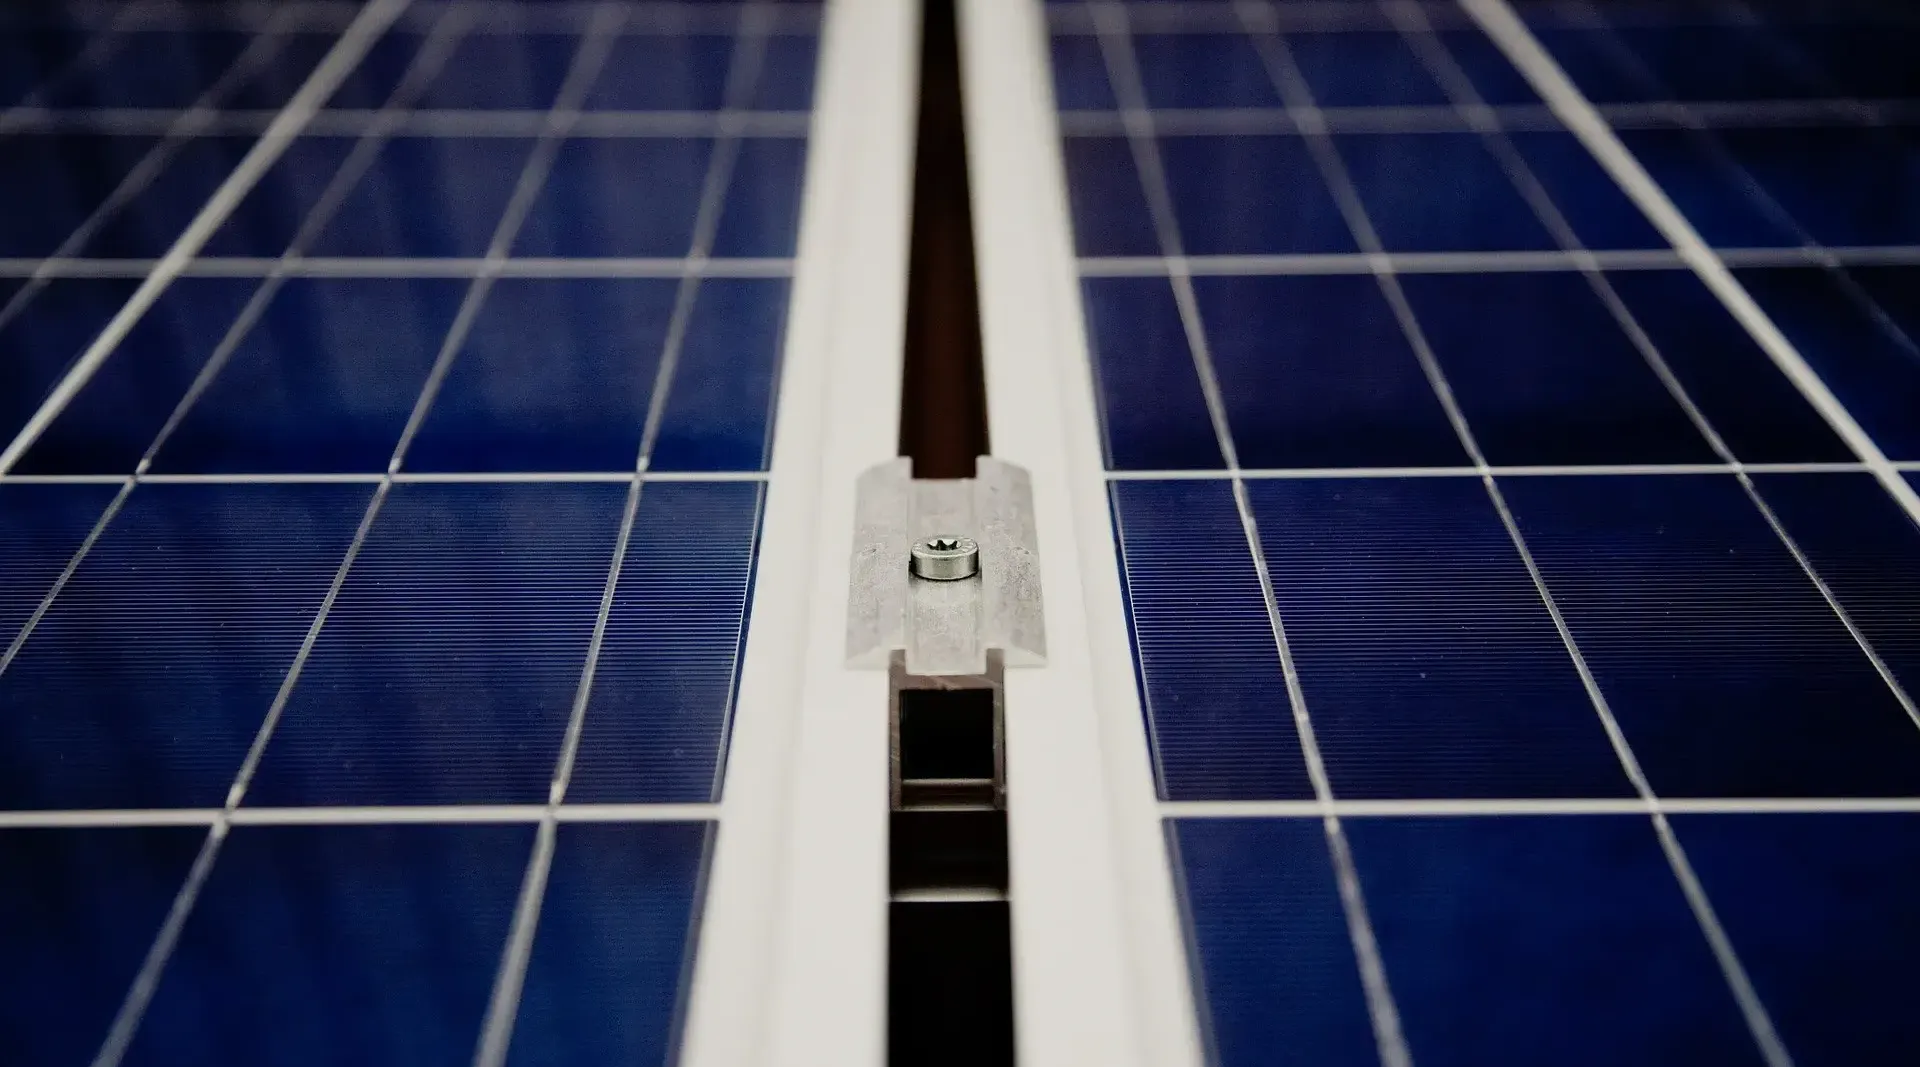 Panneaux solaires installés sur le toit de notre entreprise pour aider à réduire l'empreinte écologique due à l'utilisation et à la consommation - Inelmatic